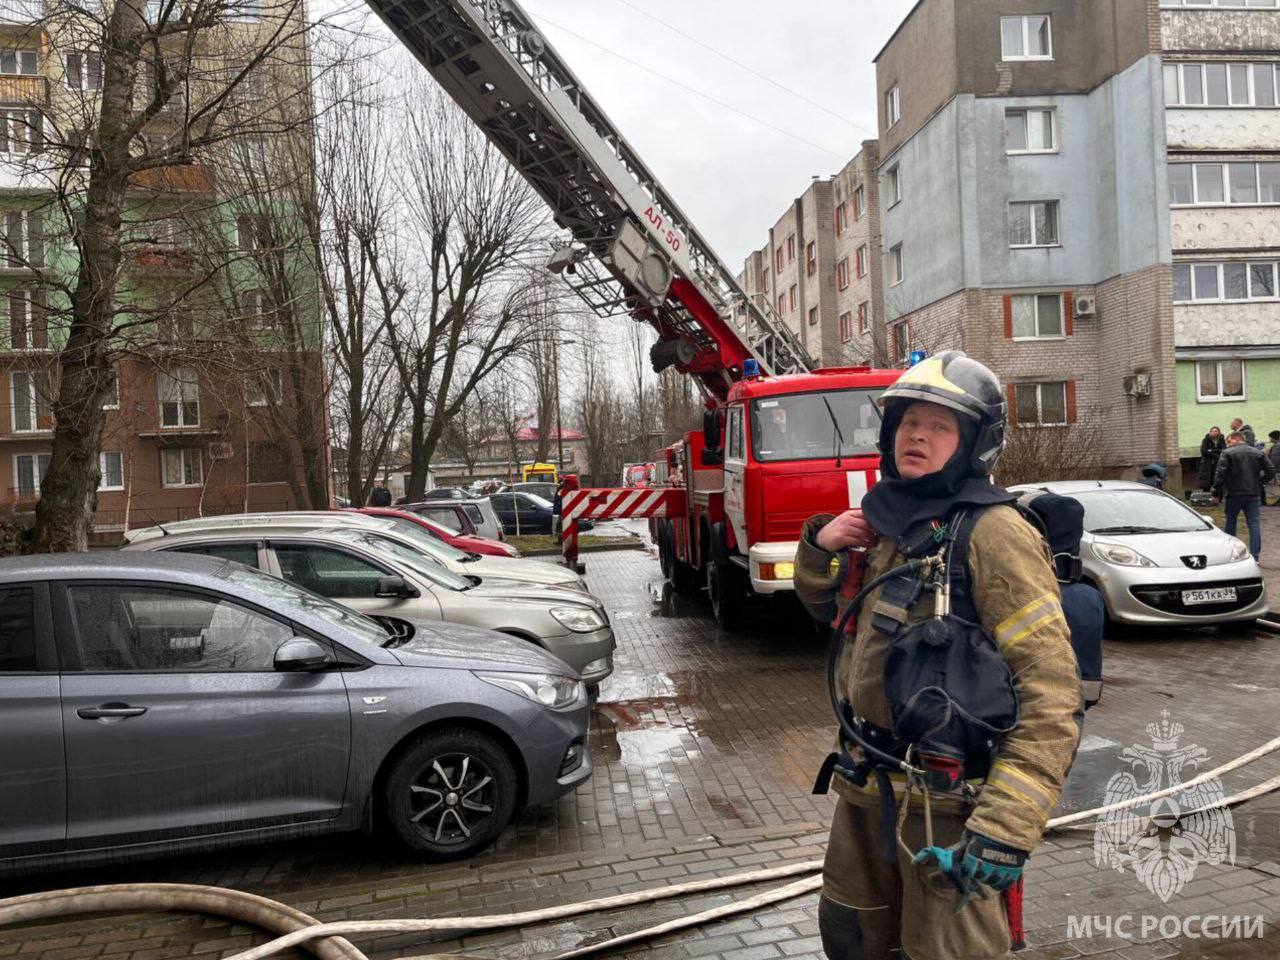 20 жильцов эвакуировали, двух детей госпитализировали при пожаре на улице Суворова в Калининграде